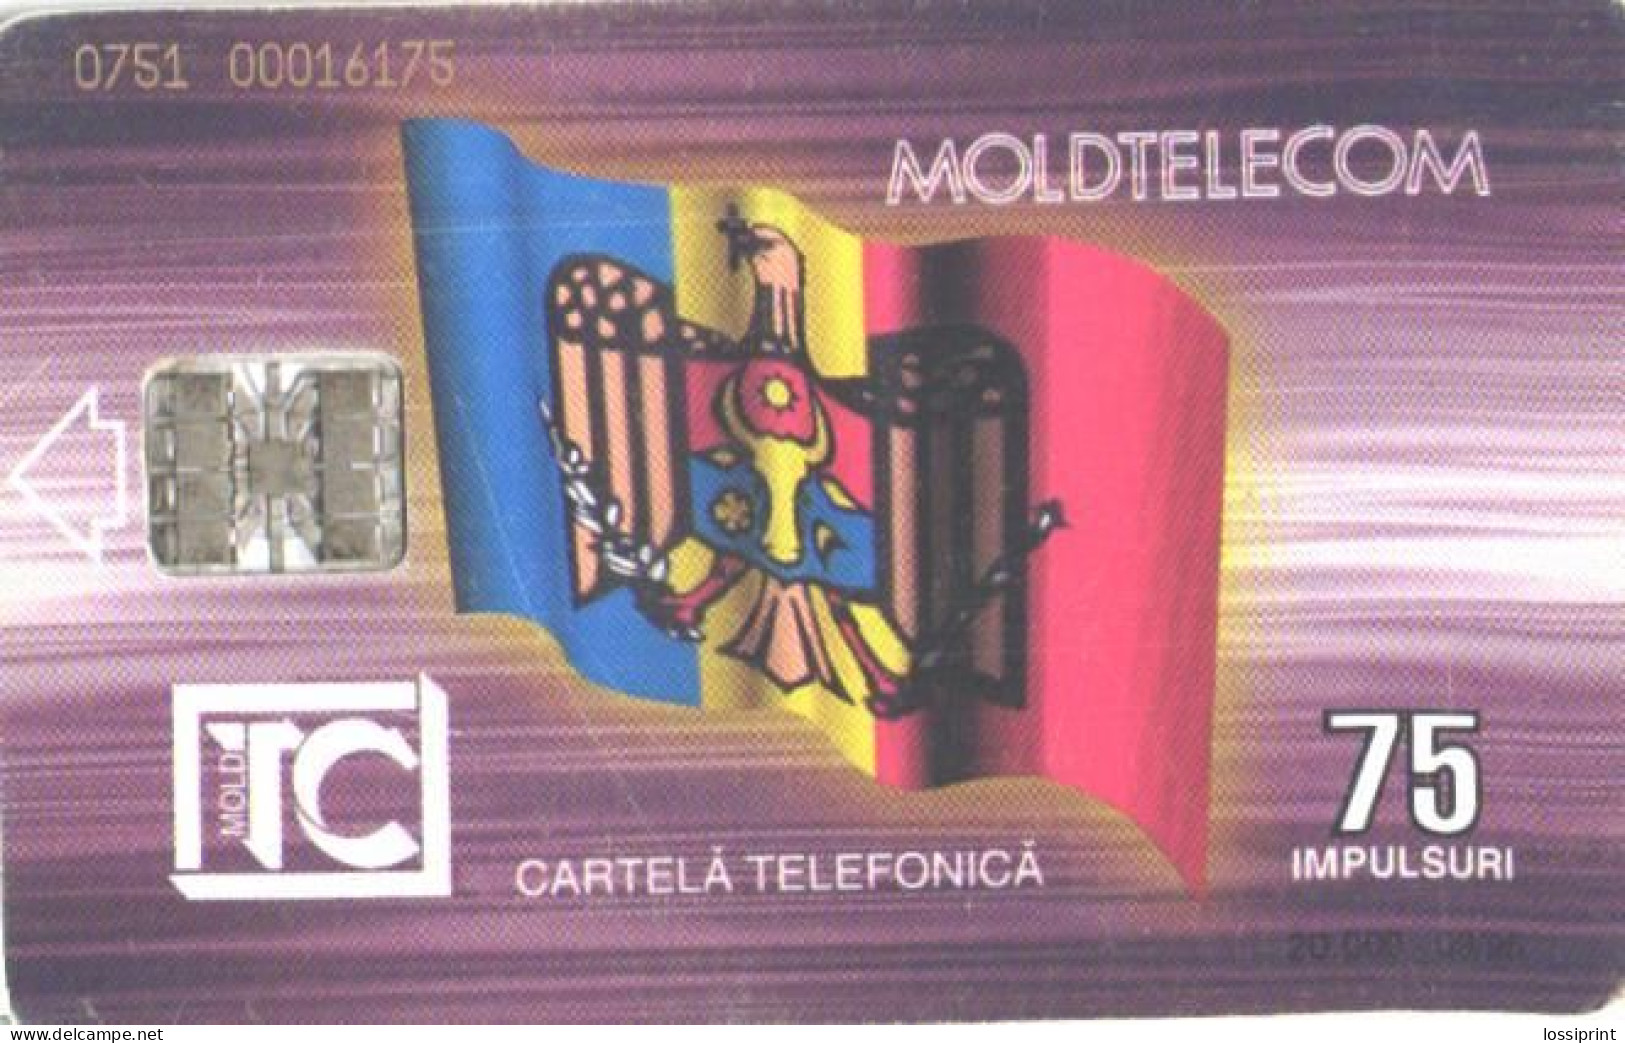 Moldova:Used Phonecard, Moldtelecom, 75 Impulses, Building, 1995 - Moldawien (Moldau)